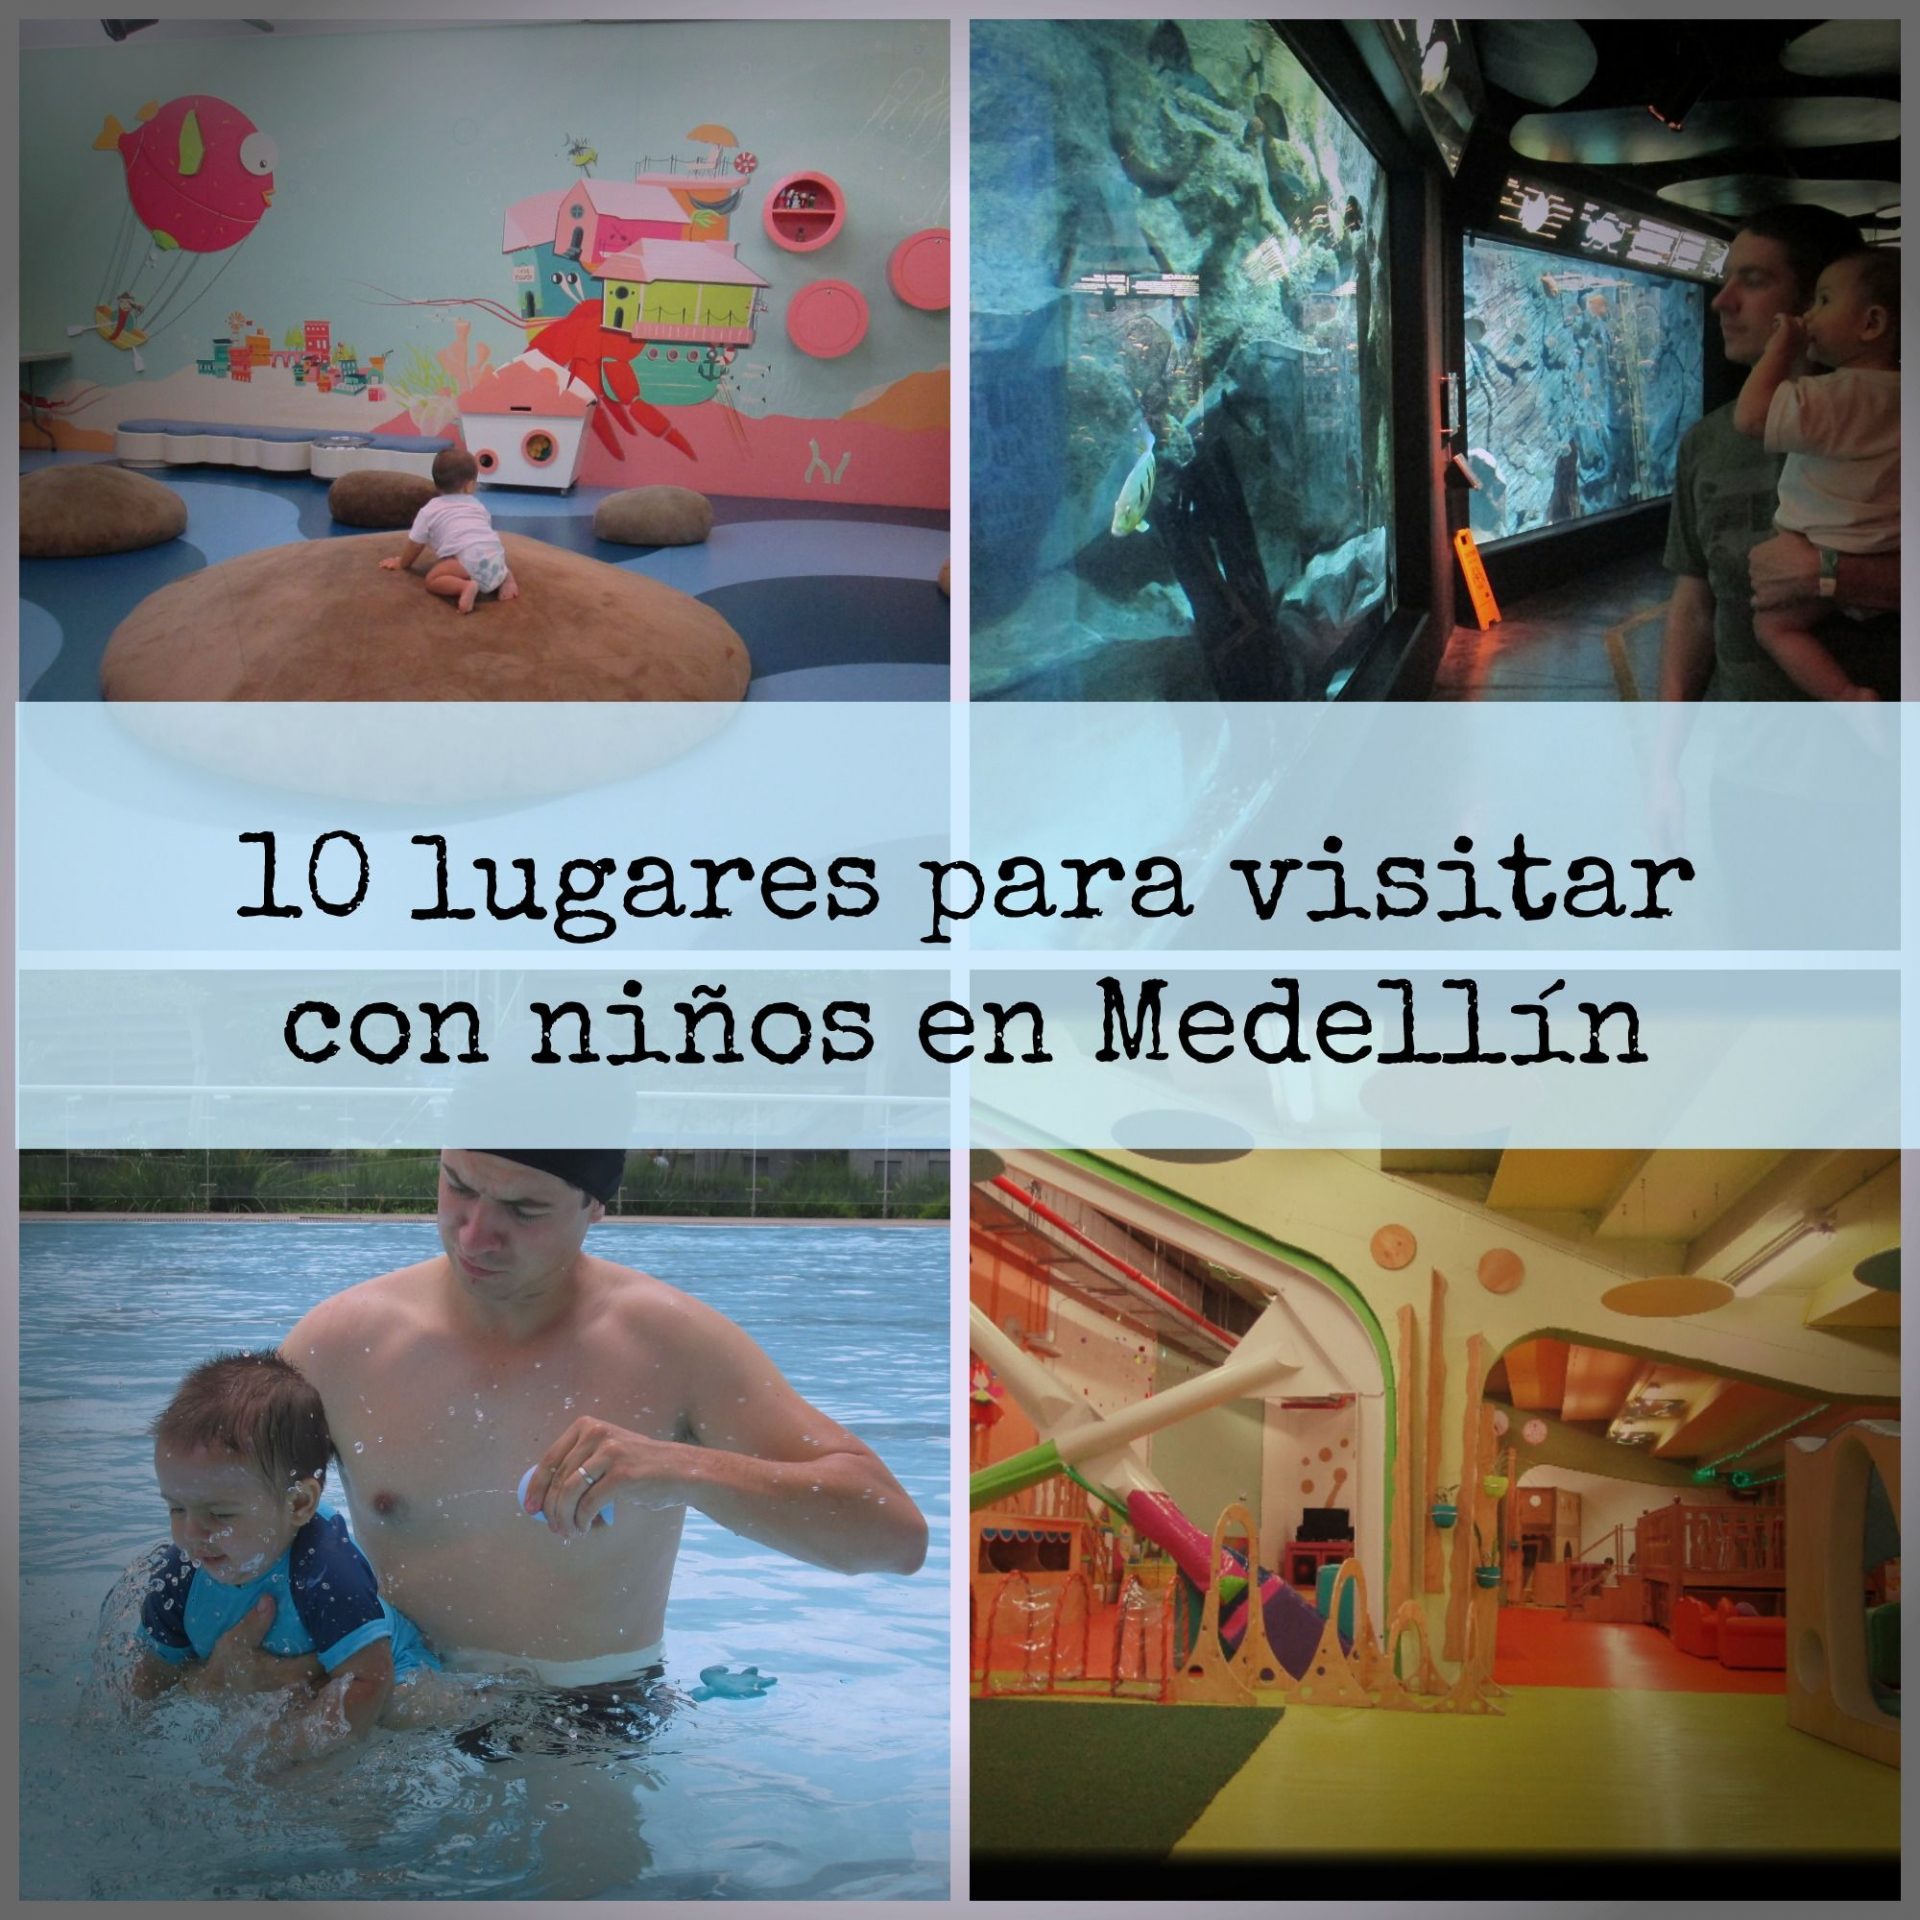 10 lugares para visitar con niños en Medellín